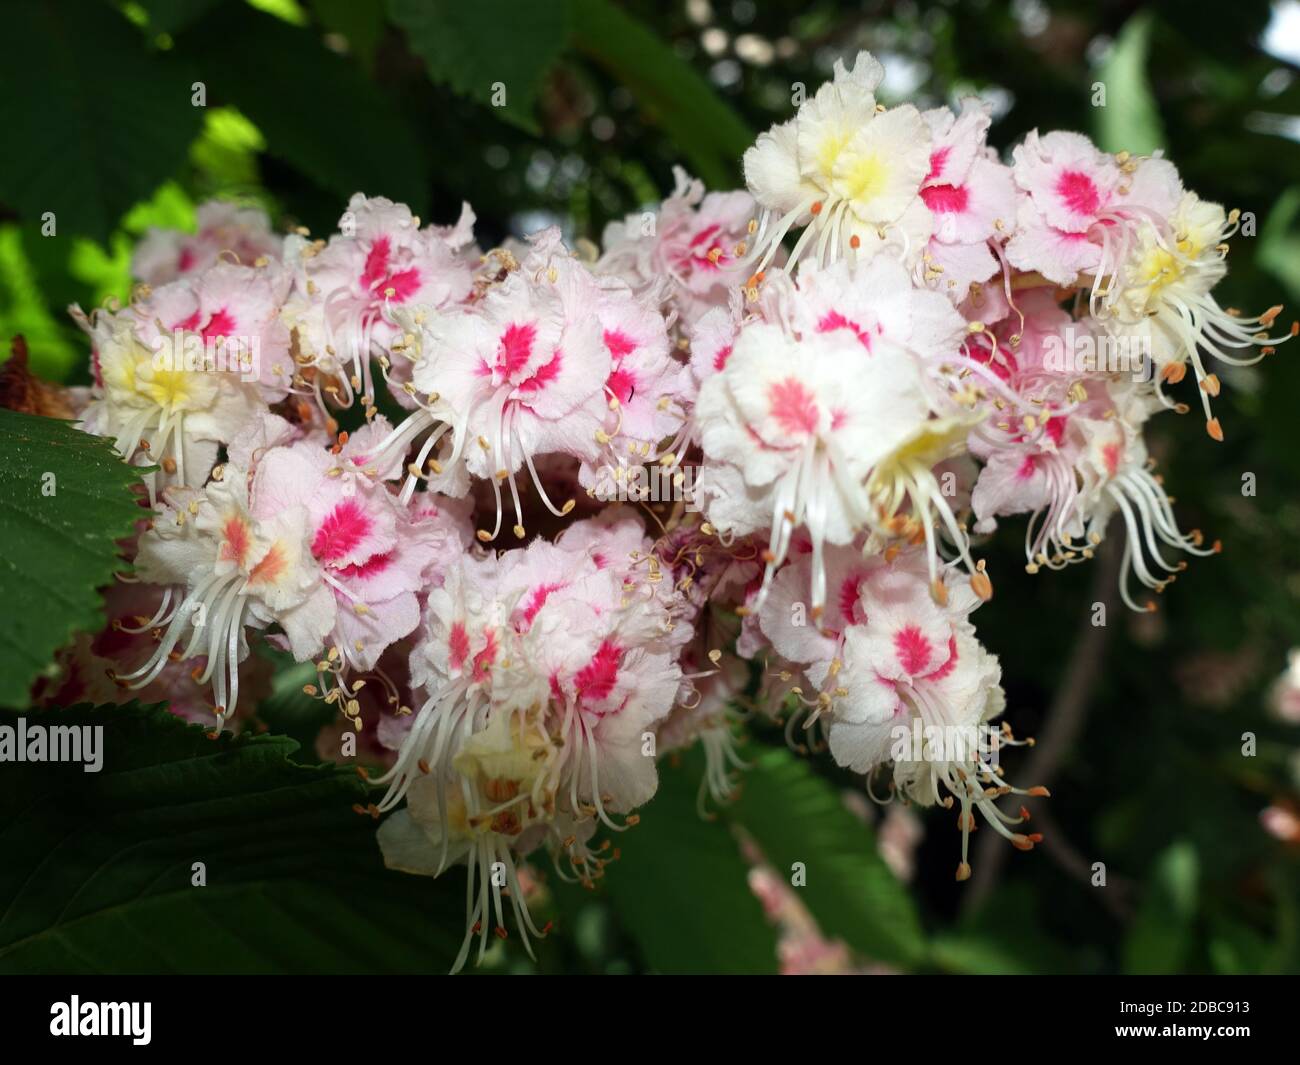 Gewöhnliche Rosskastanie (Aesculus hippocastanum) oder Weiße Rosskastanie - Blütenstand, Weilerswist, Nordrhein-Westfalen, Allemagne Banque D'Images